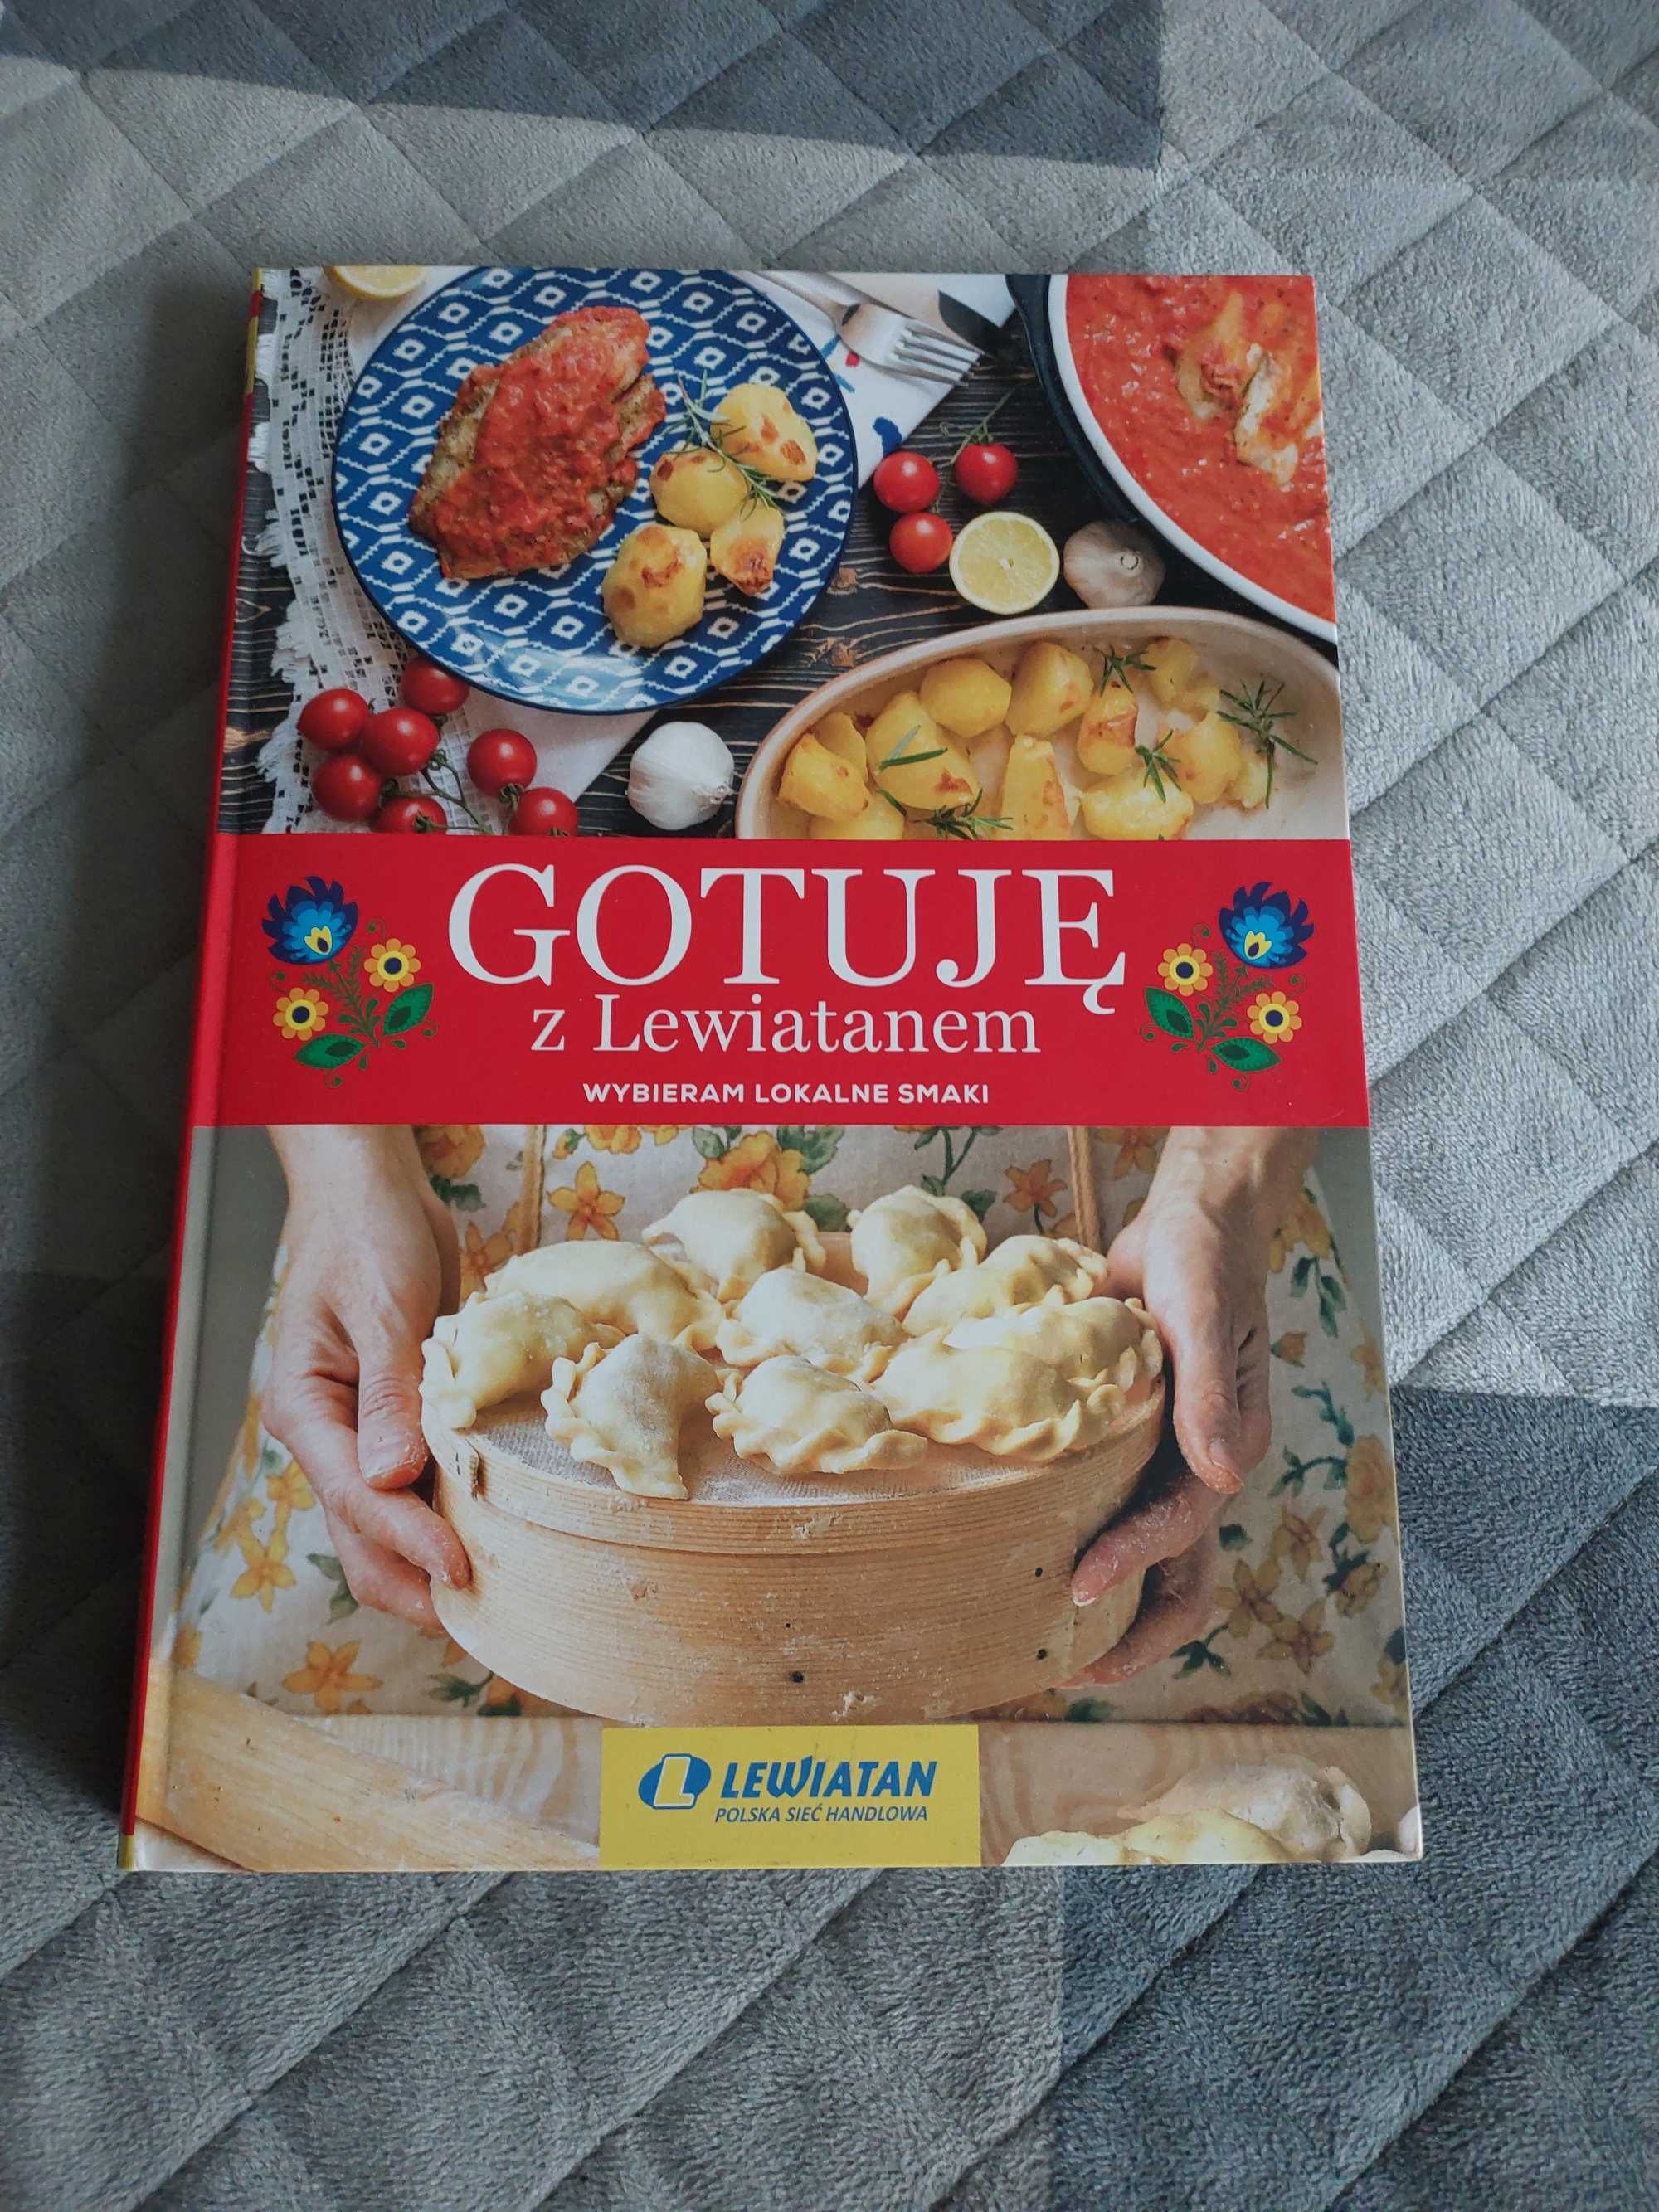 Gotuję z Lewiatanem, książka kucharska